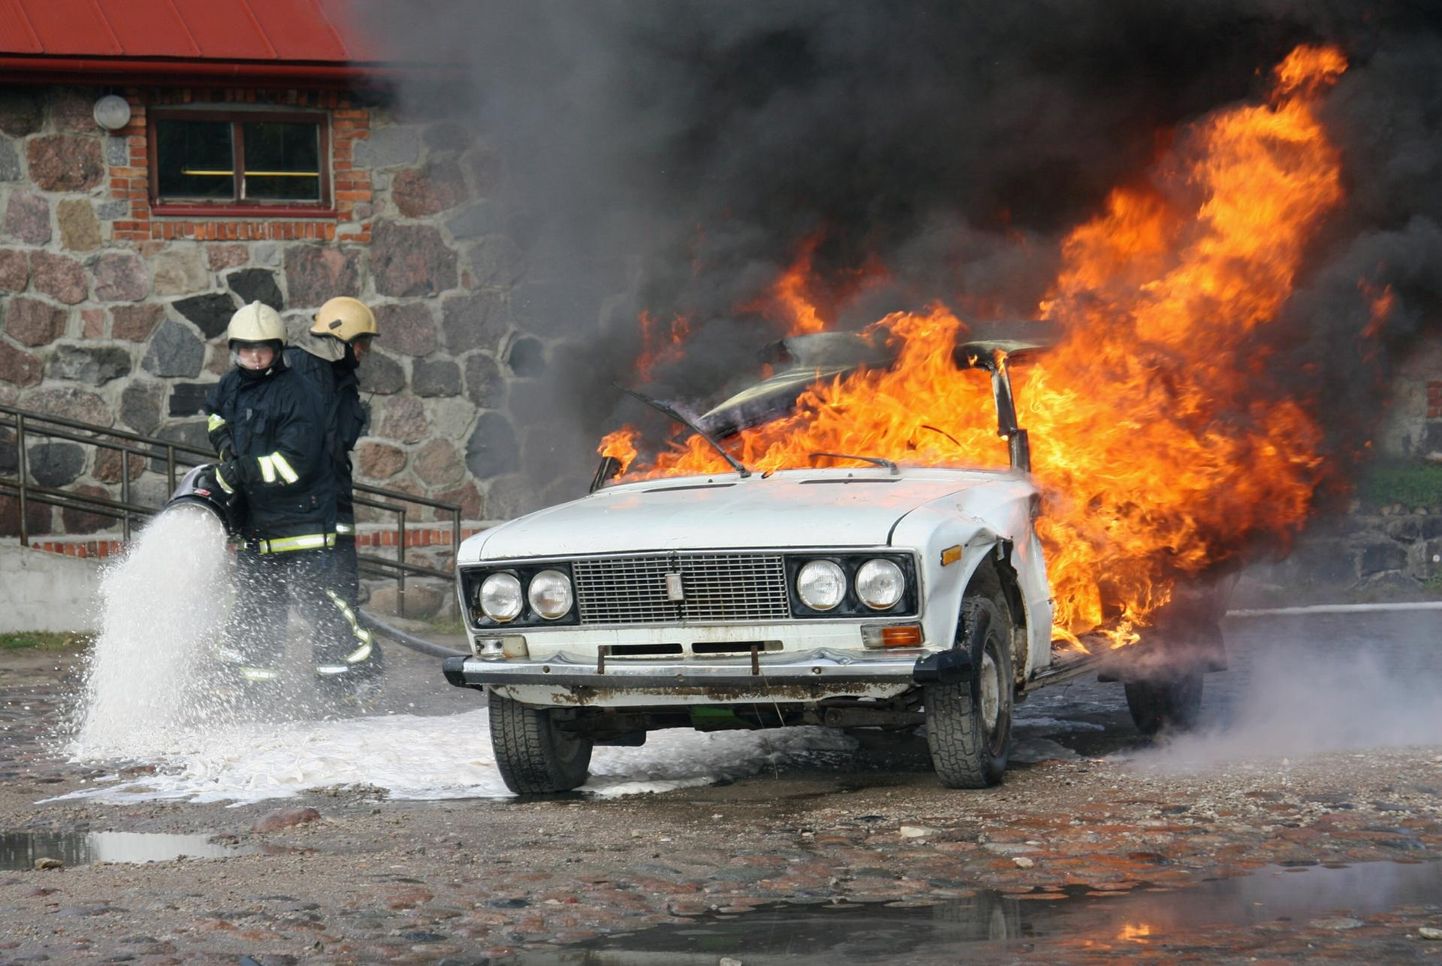 See põlev auto on üles võetud päästjate ohutuspäeval ja pole Jakobimõisas juhtunuga seotud.